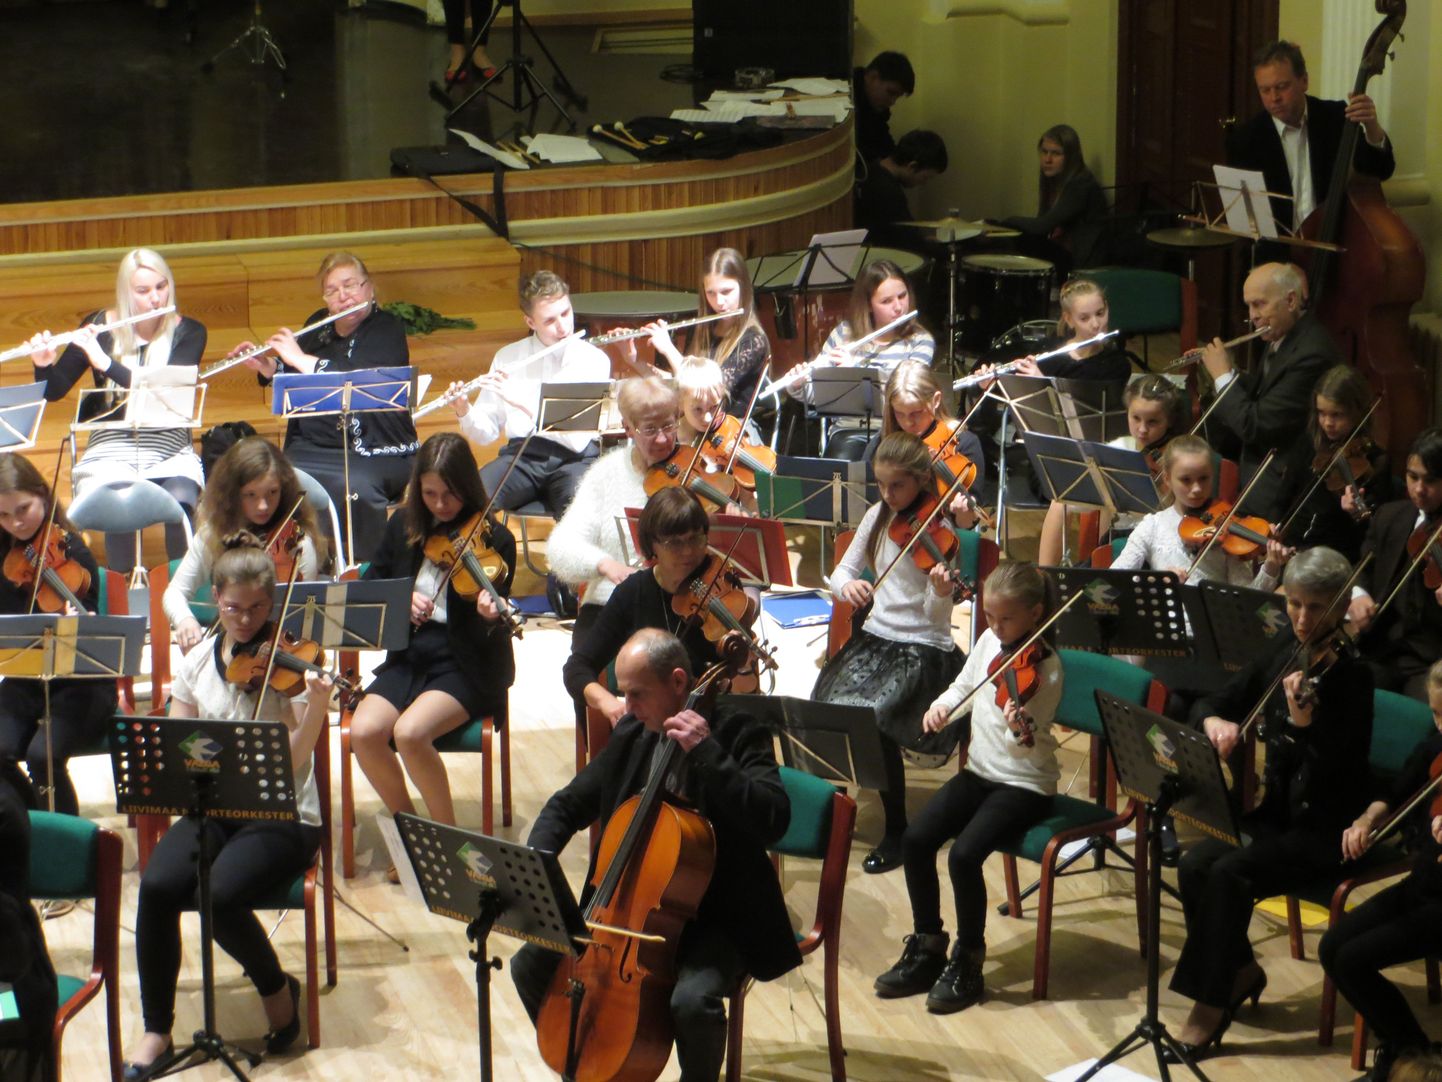 2014. aastal asutatud Liivimaa noorteorkestris mängib ligi 80 orkestranti, kelle hulgas musitseerivad õpetajad, õpilased ja vilistlased kaheksast muusikakoolist. Juba homme on kõigil huvilistel võimalus neid Valga raudteejaamas aset leidvale heategevuskontserdile kuulama ja toetama minna.